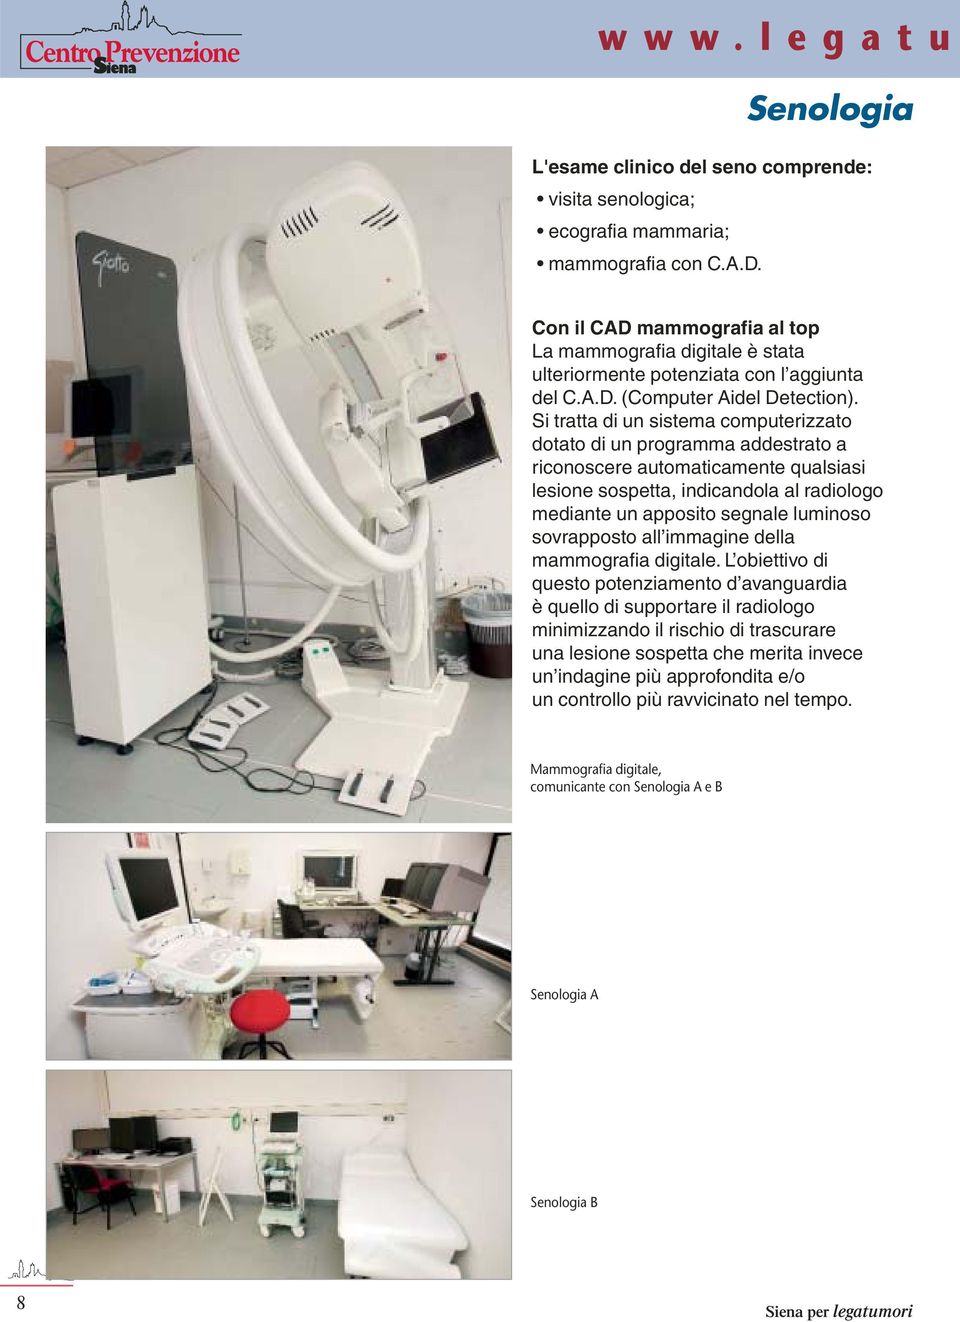 Si tratta di un sistema computerizzato dotato di un programma addestrato a riconoscere automaticamente qualsiasi lesione sospetta, indicandola al radiologo mediante un apposito segnale luminoso